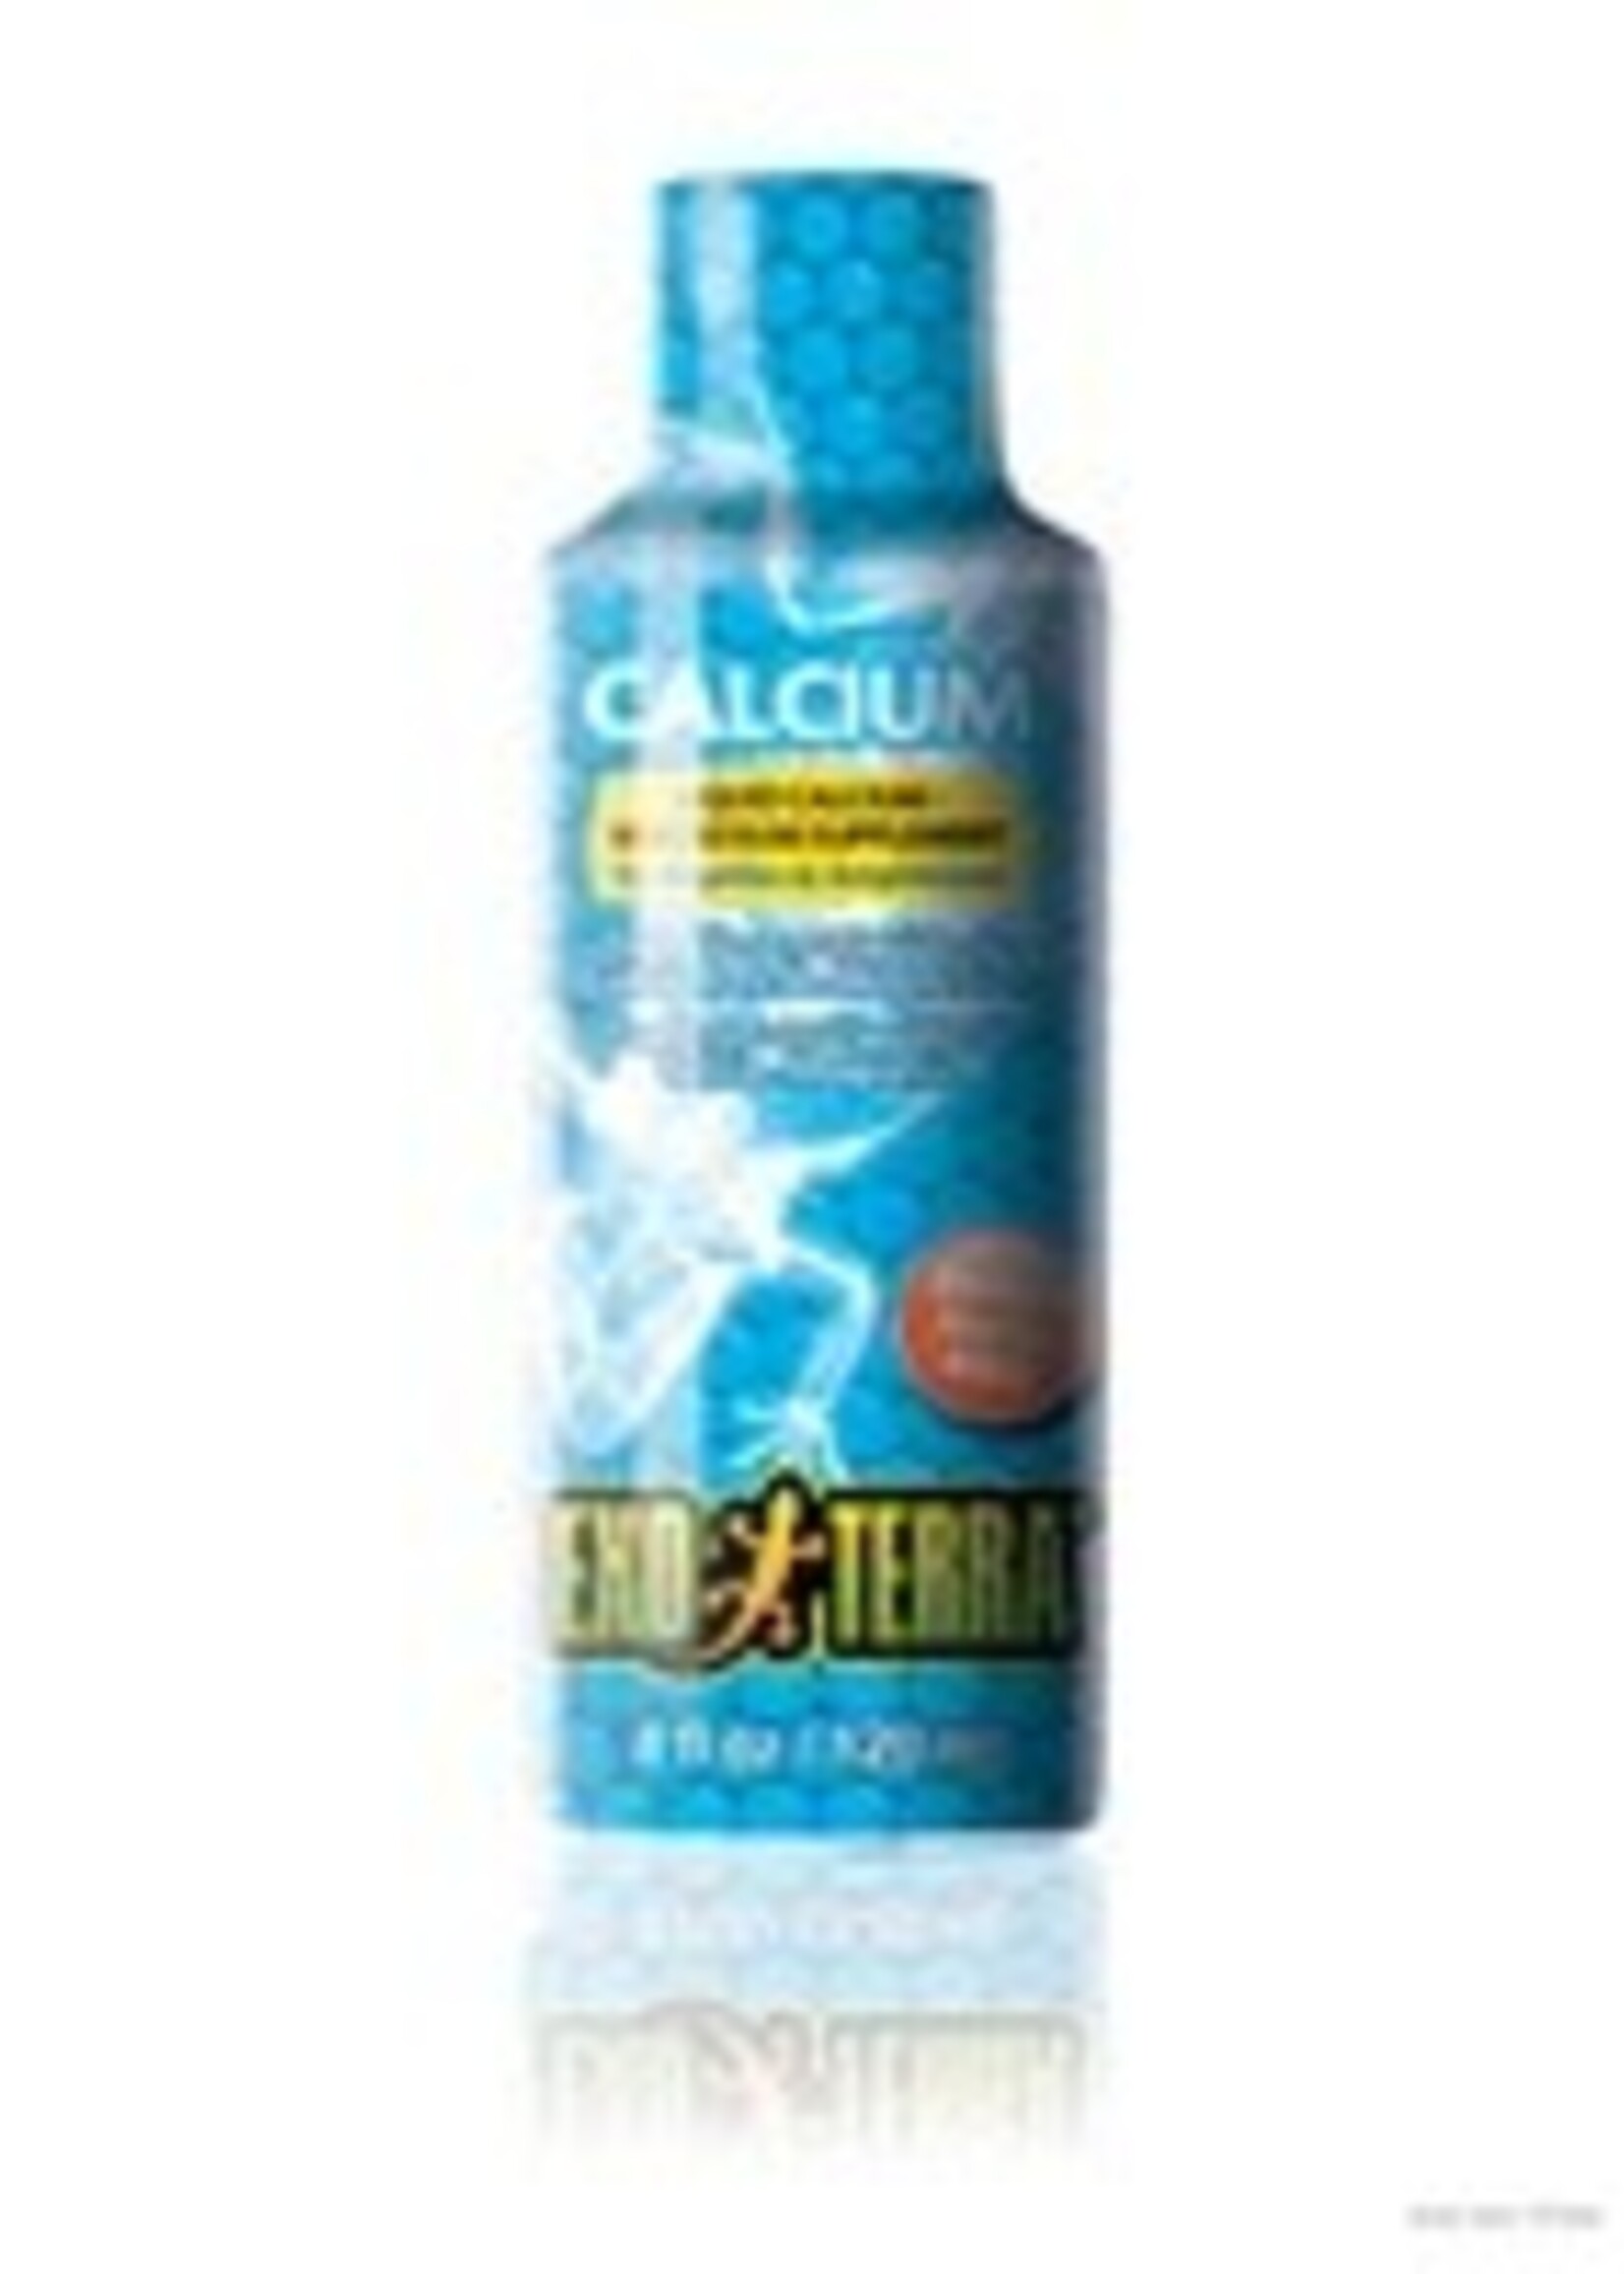 Exo Terra Liquid Calcium Supplement, 4 oz